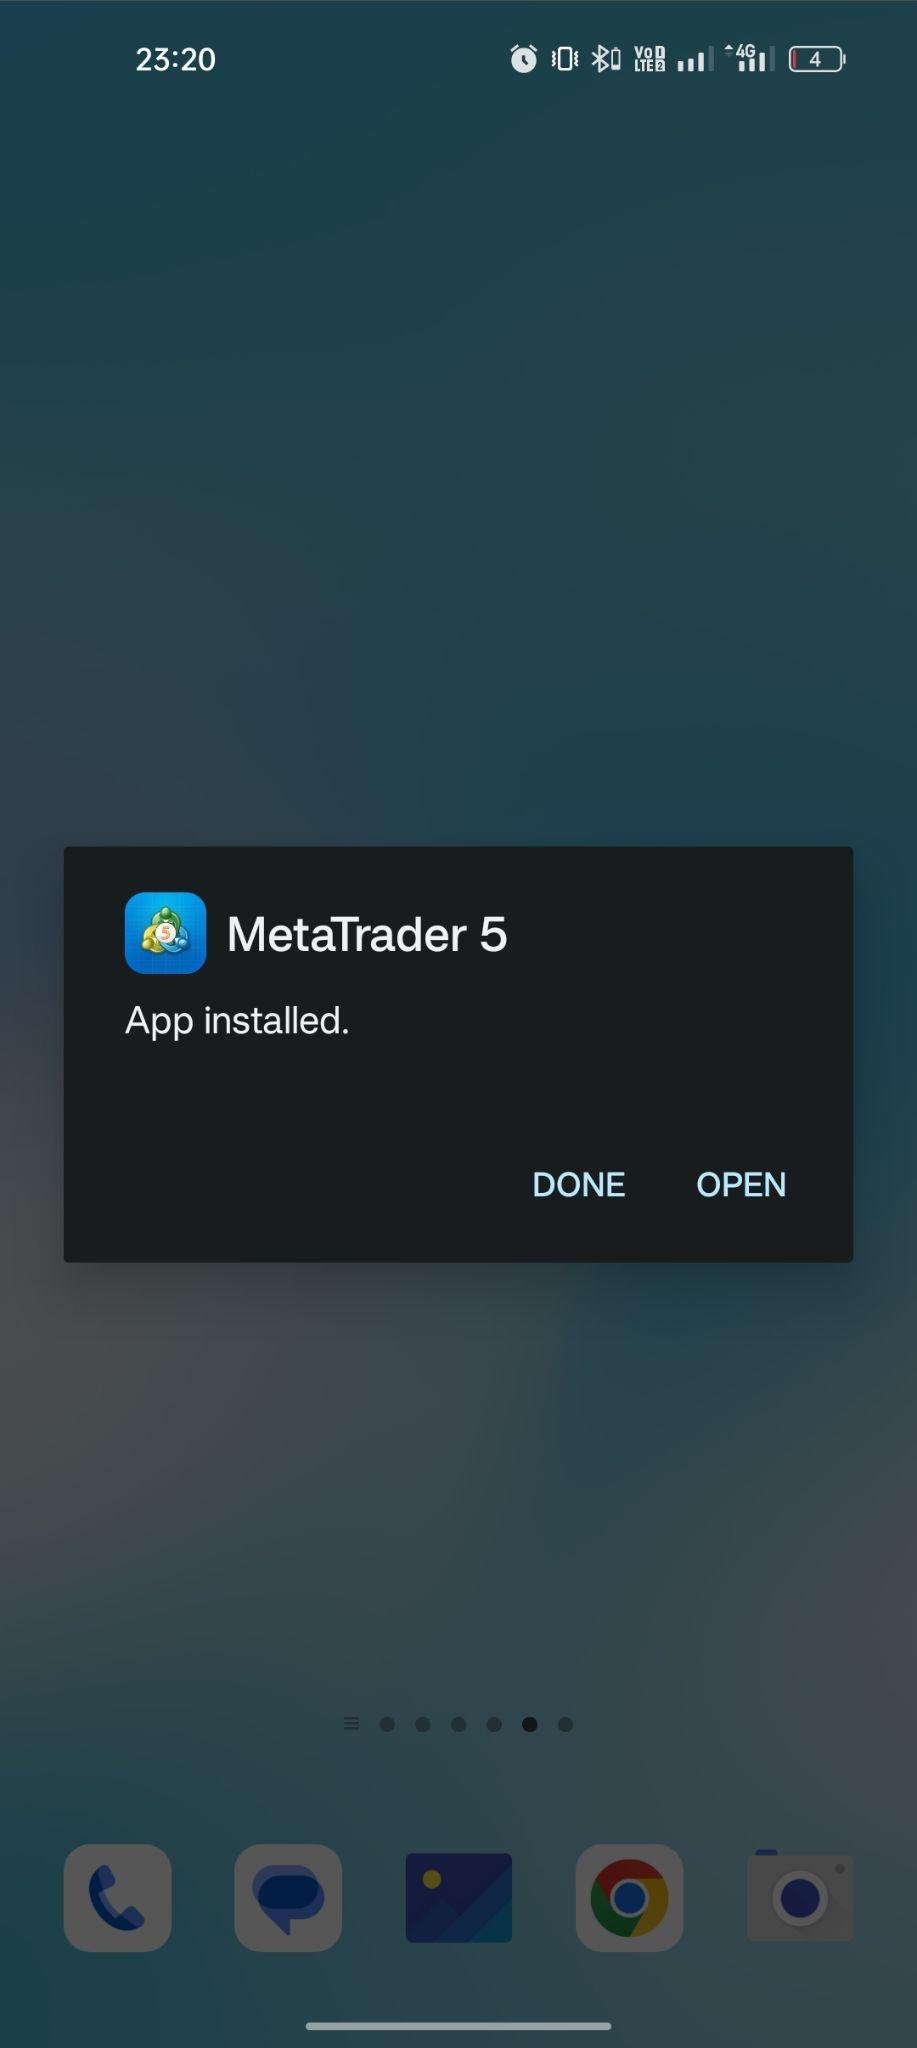 MetaTrader 5 apk installed